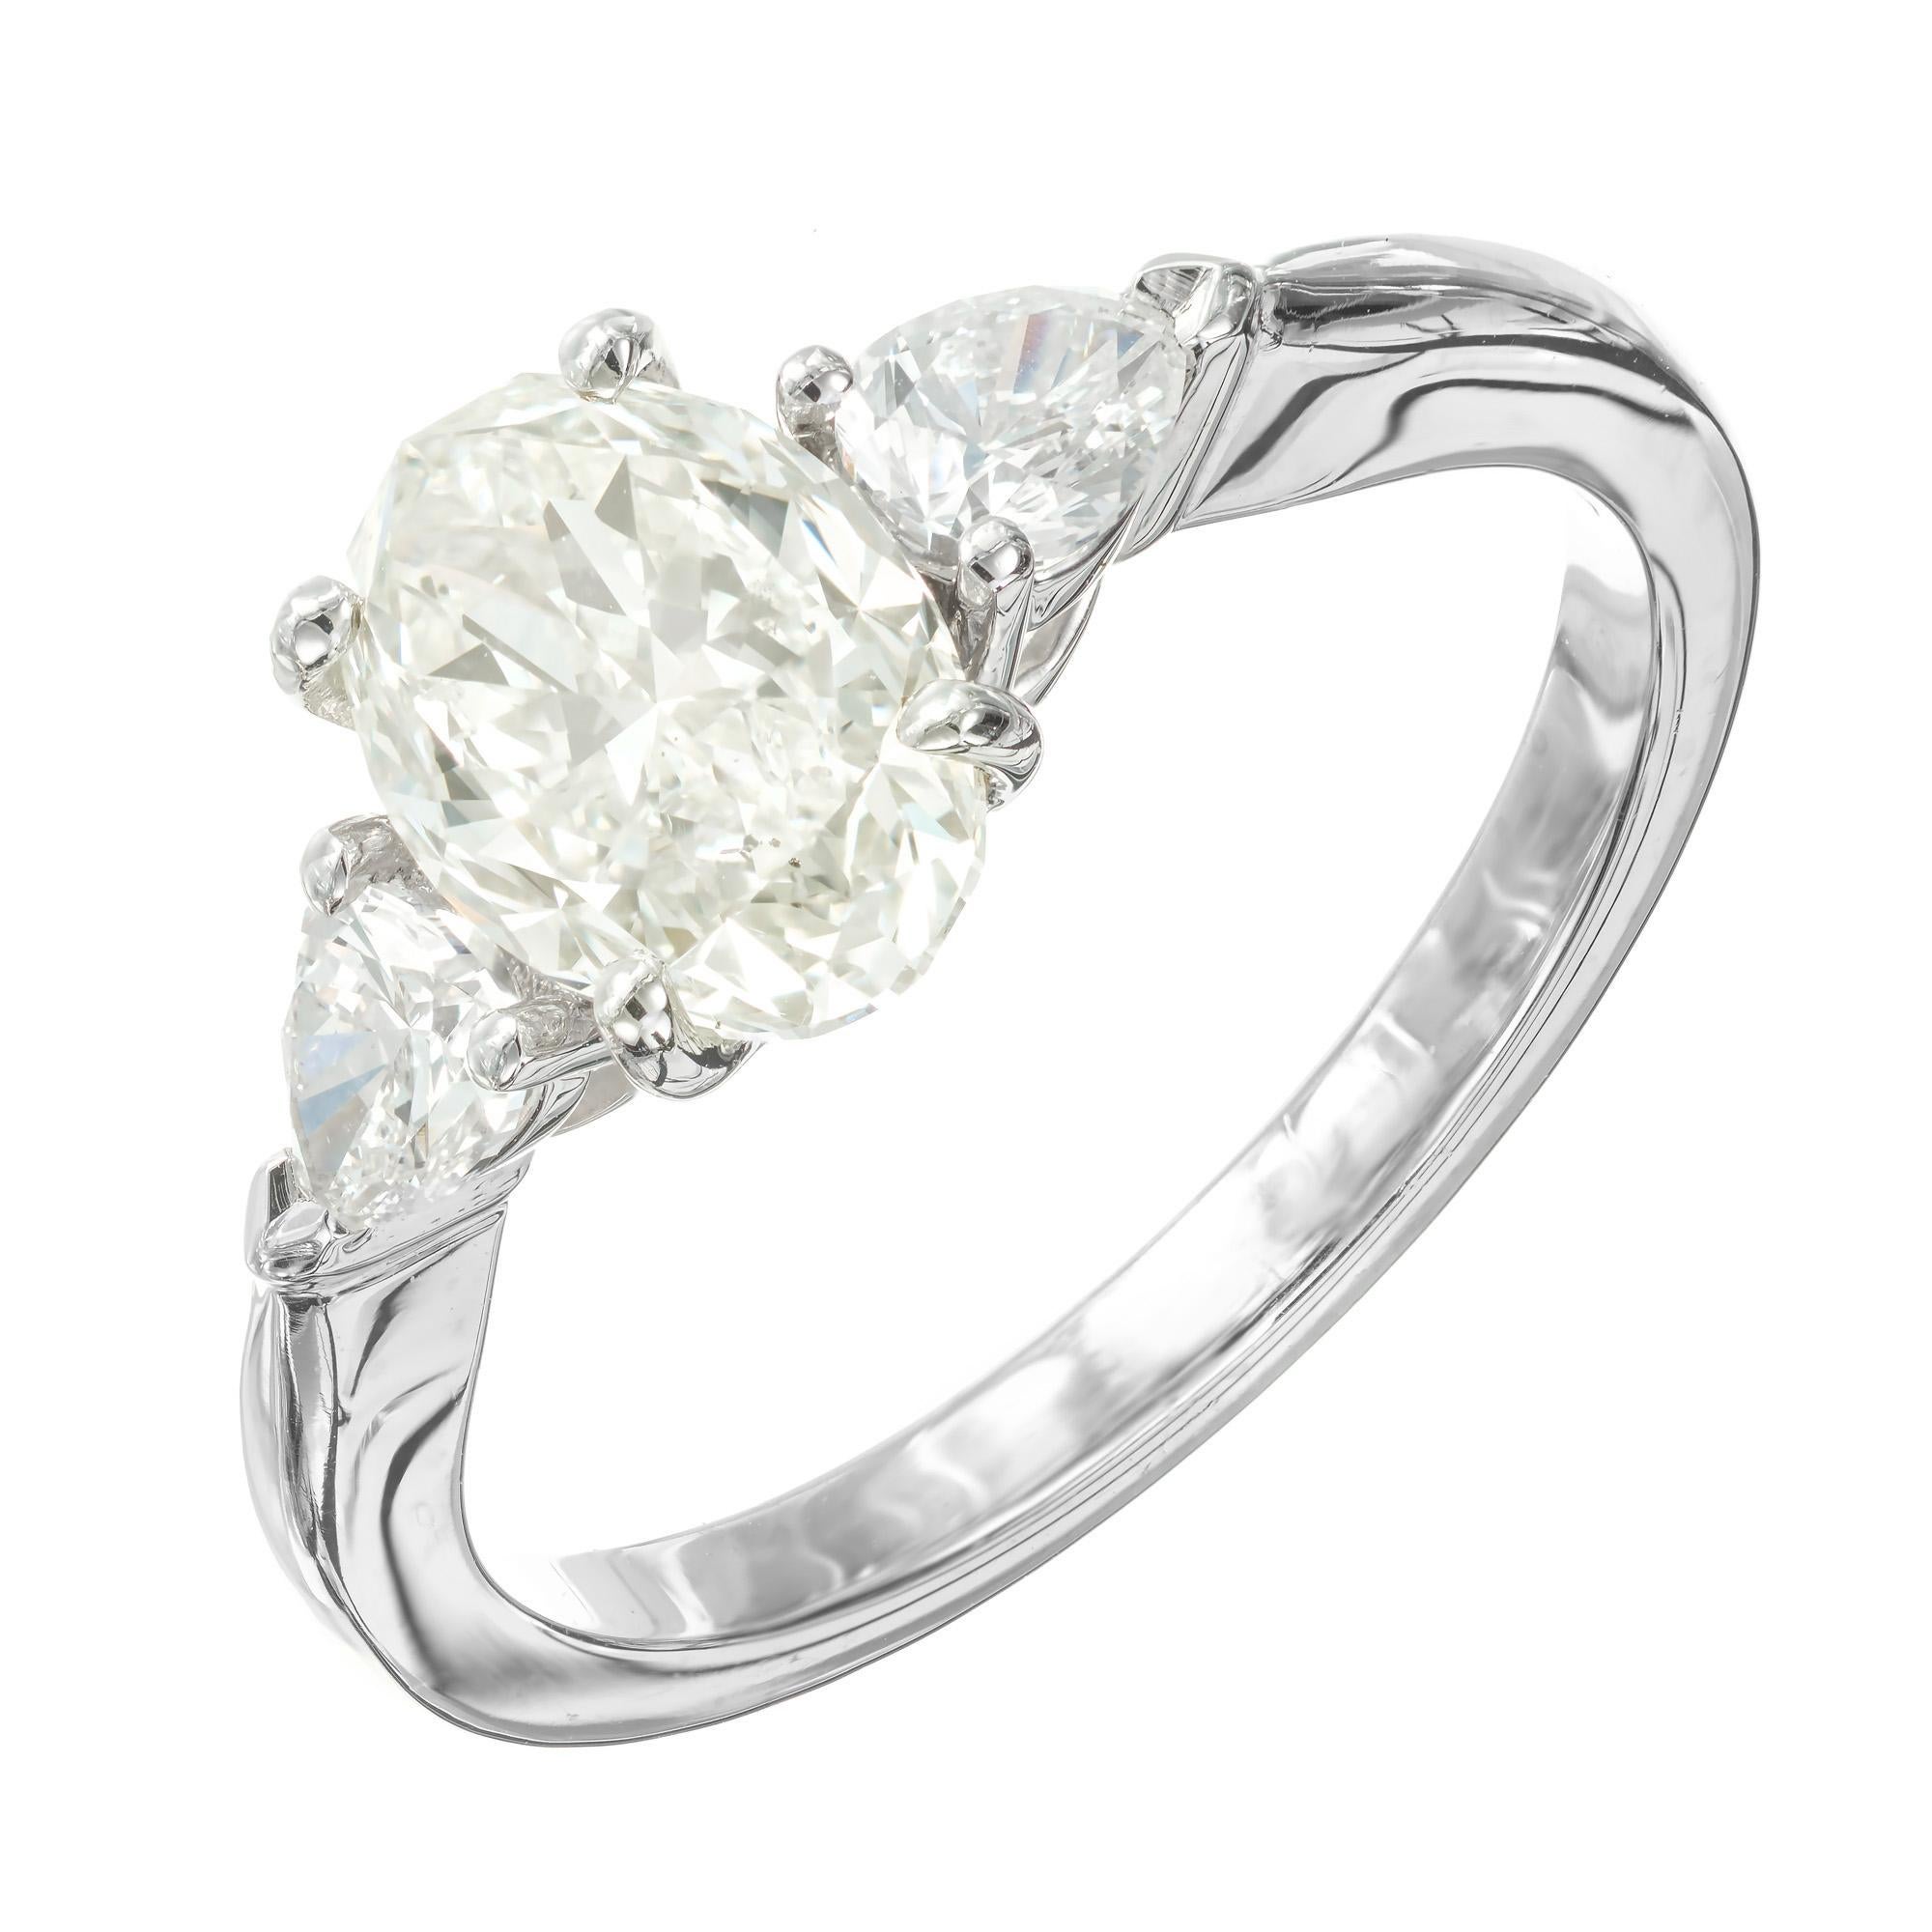 Bague de fiançailles en diamant. Diamant central ovale de 1,60 carat certifié par le GIA, de couleur blanche avec juste un soupçon de couleur, serti dans une monture en platine avec 2 diamants latéraux en forme de poire. Conçu et fabriqué dans